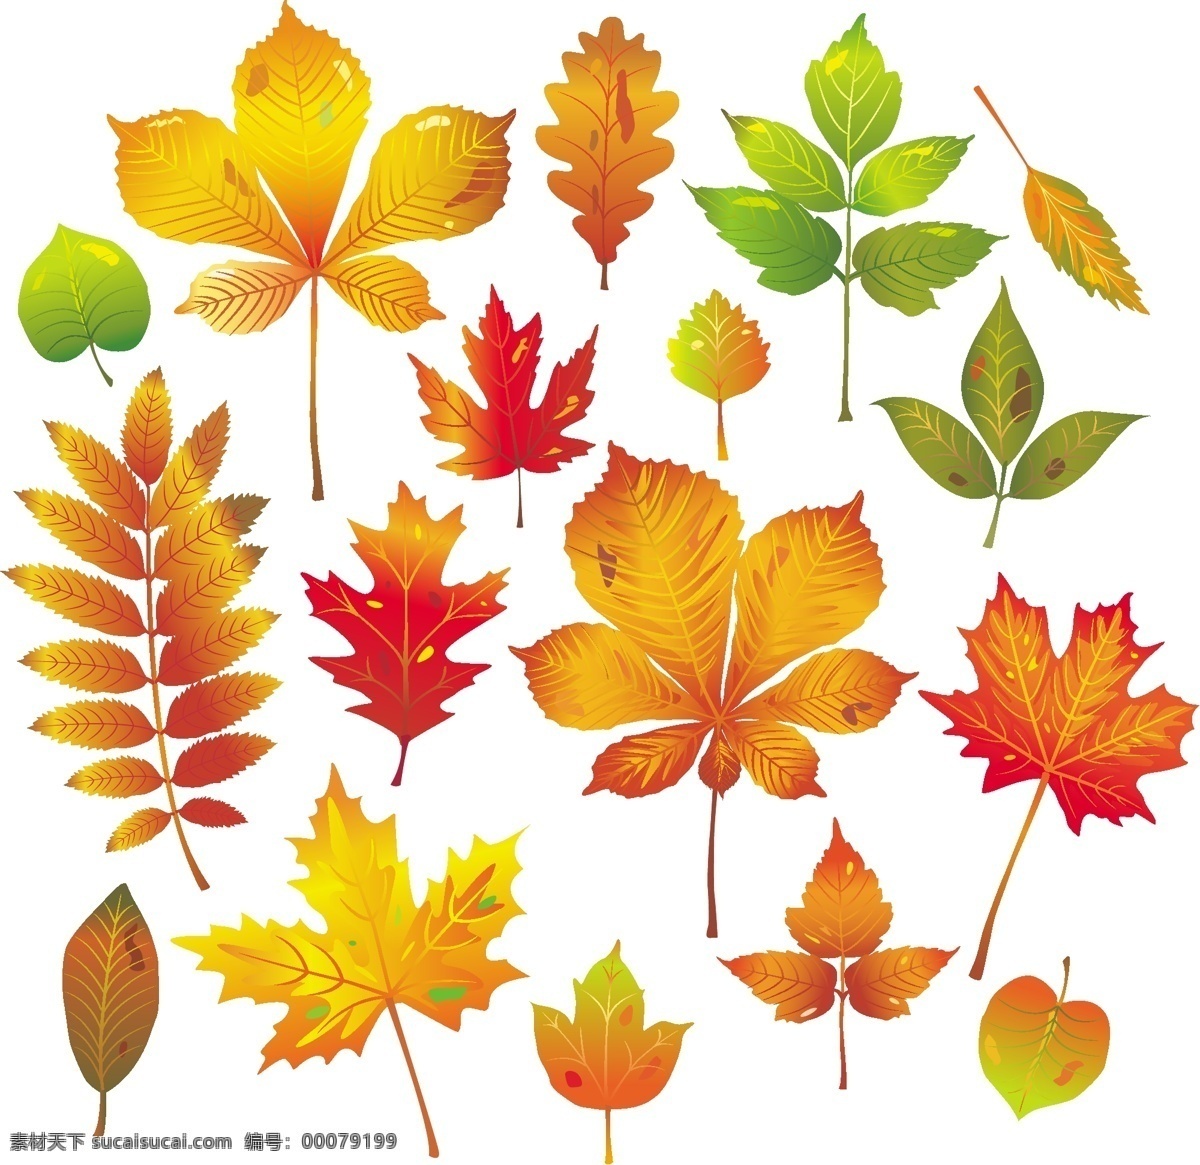 秋天 树叶 矢量 枫叶 红叶 绿叶 秋叶 植物 矢量图 其他矢量图